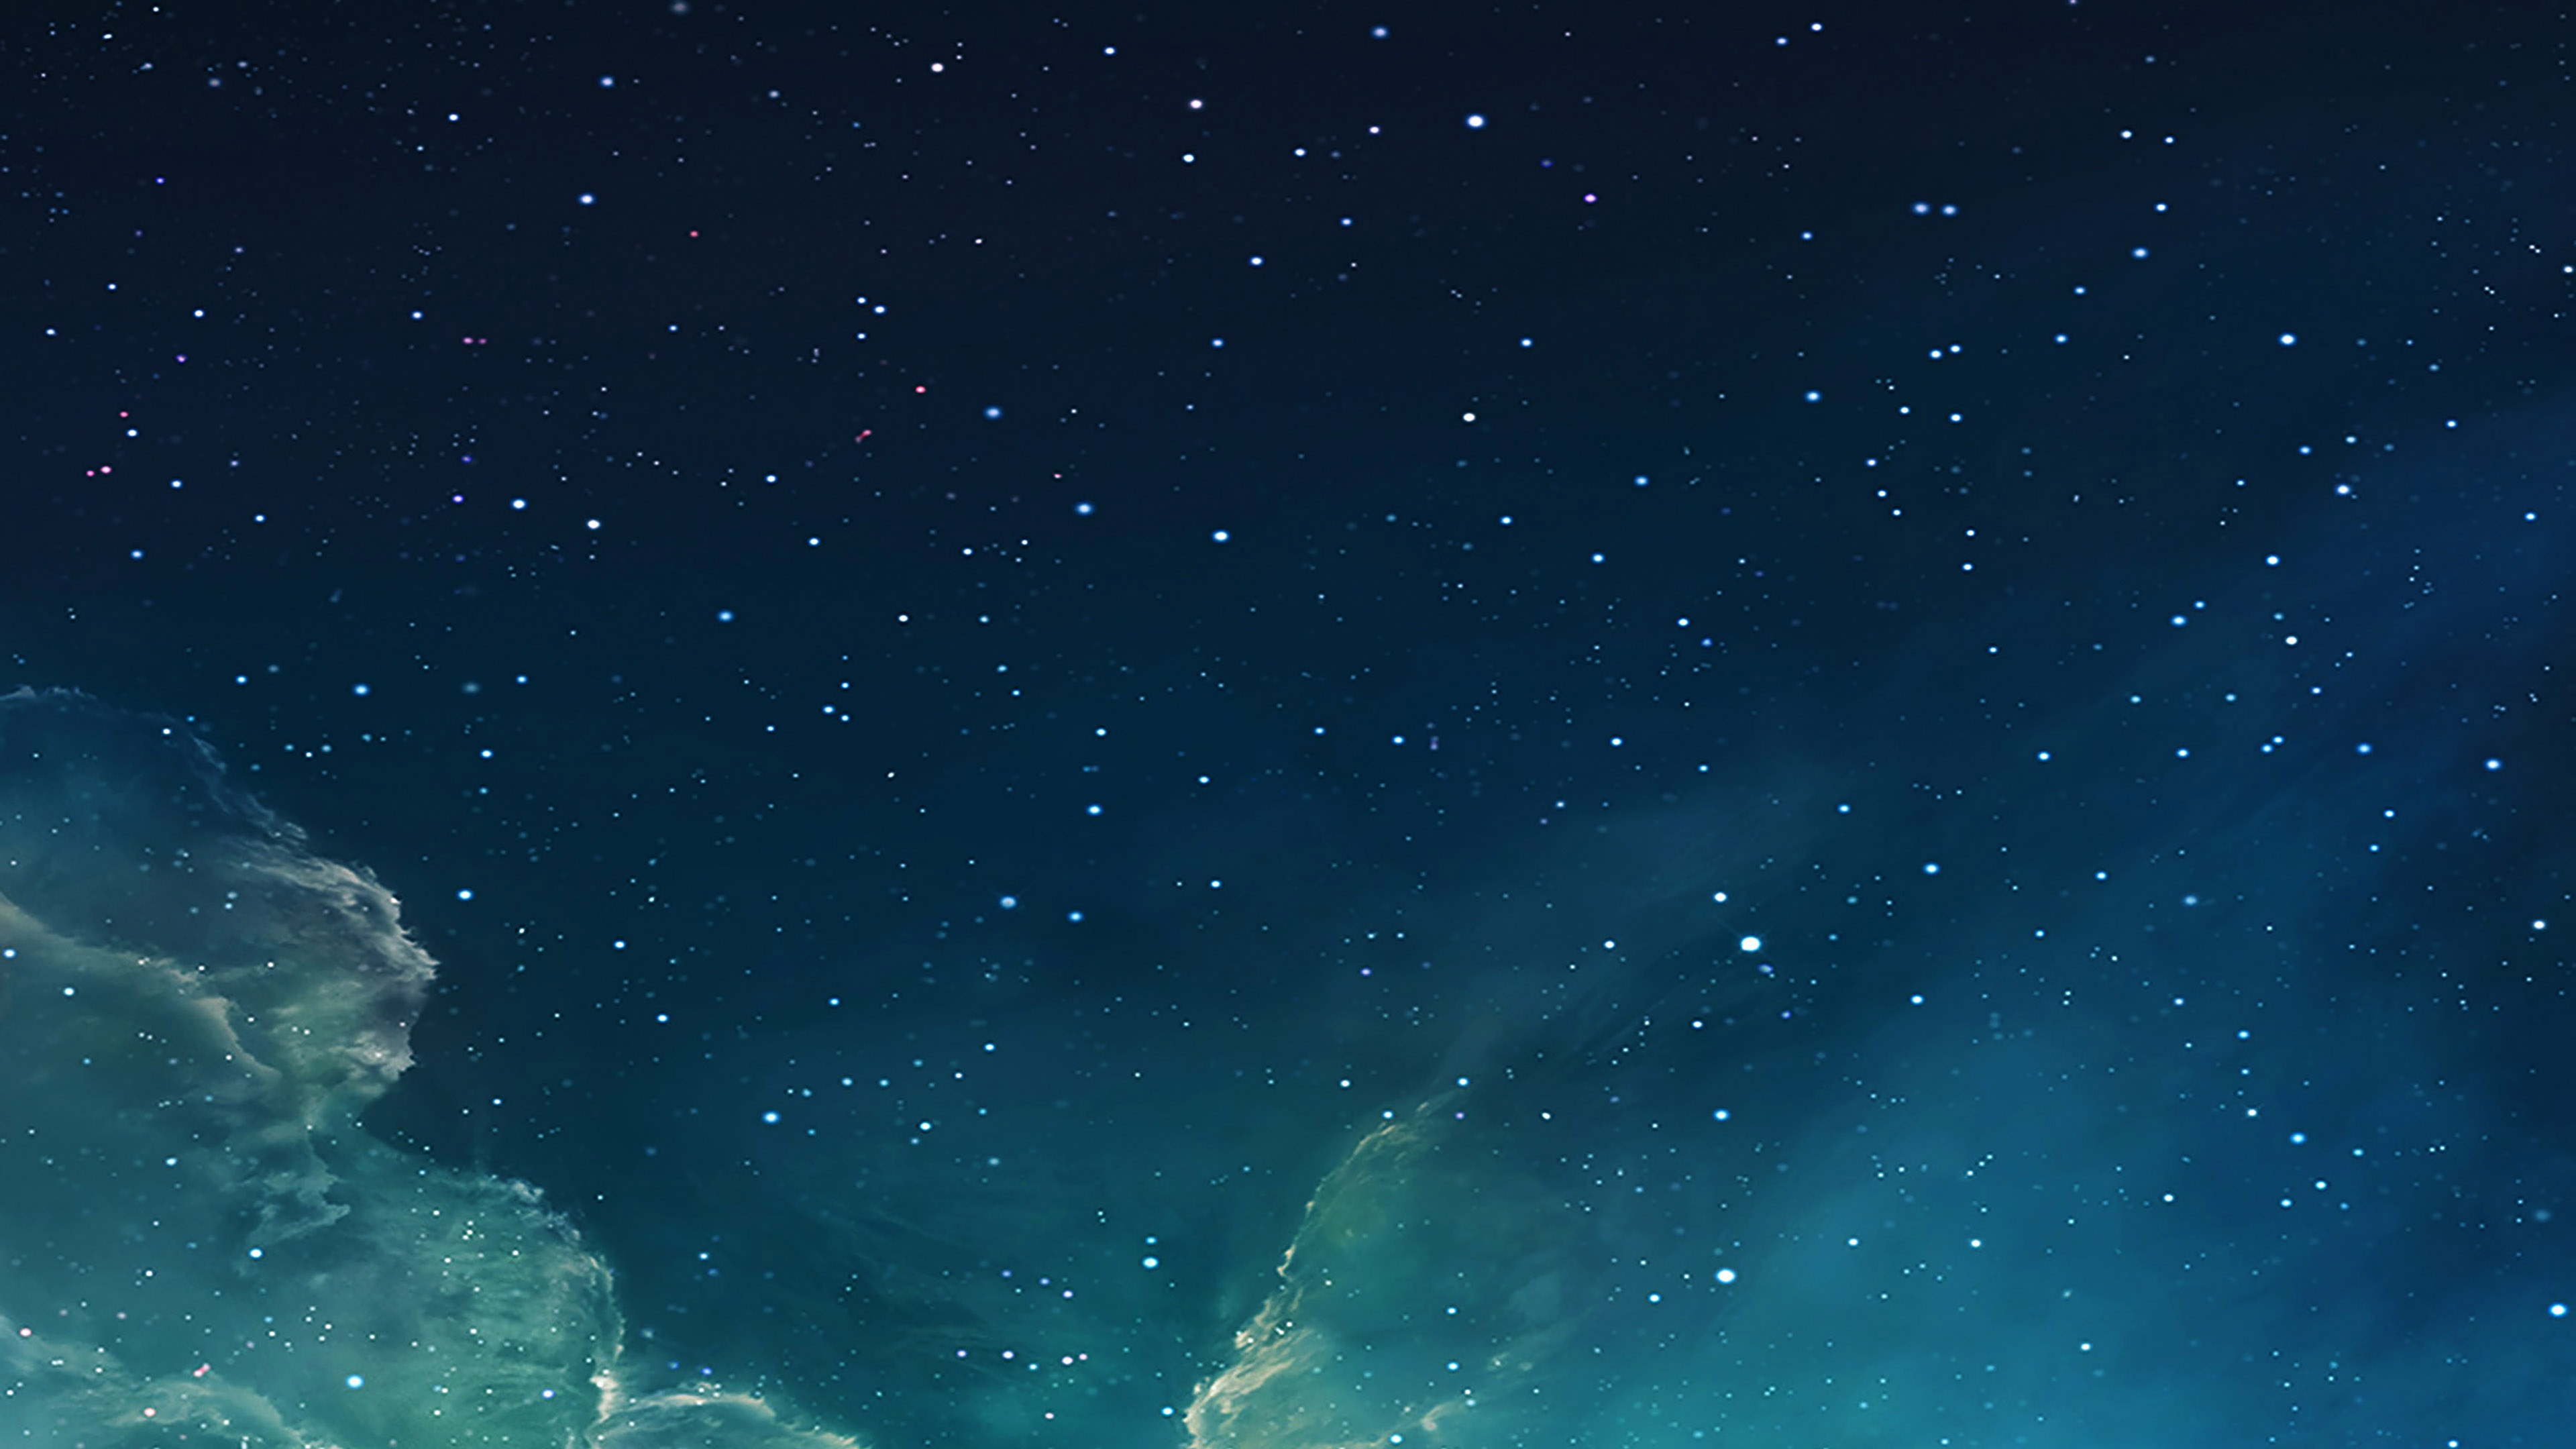 3840x2160 wallpaper for desktop, laptop | mc56-wallpaper-galaxy-blue-7-starry-star-sky